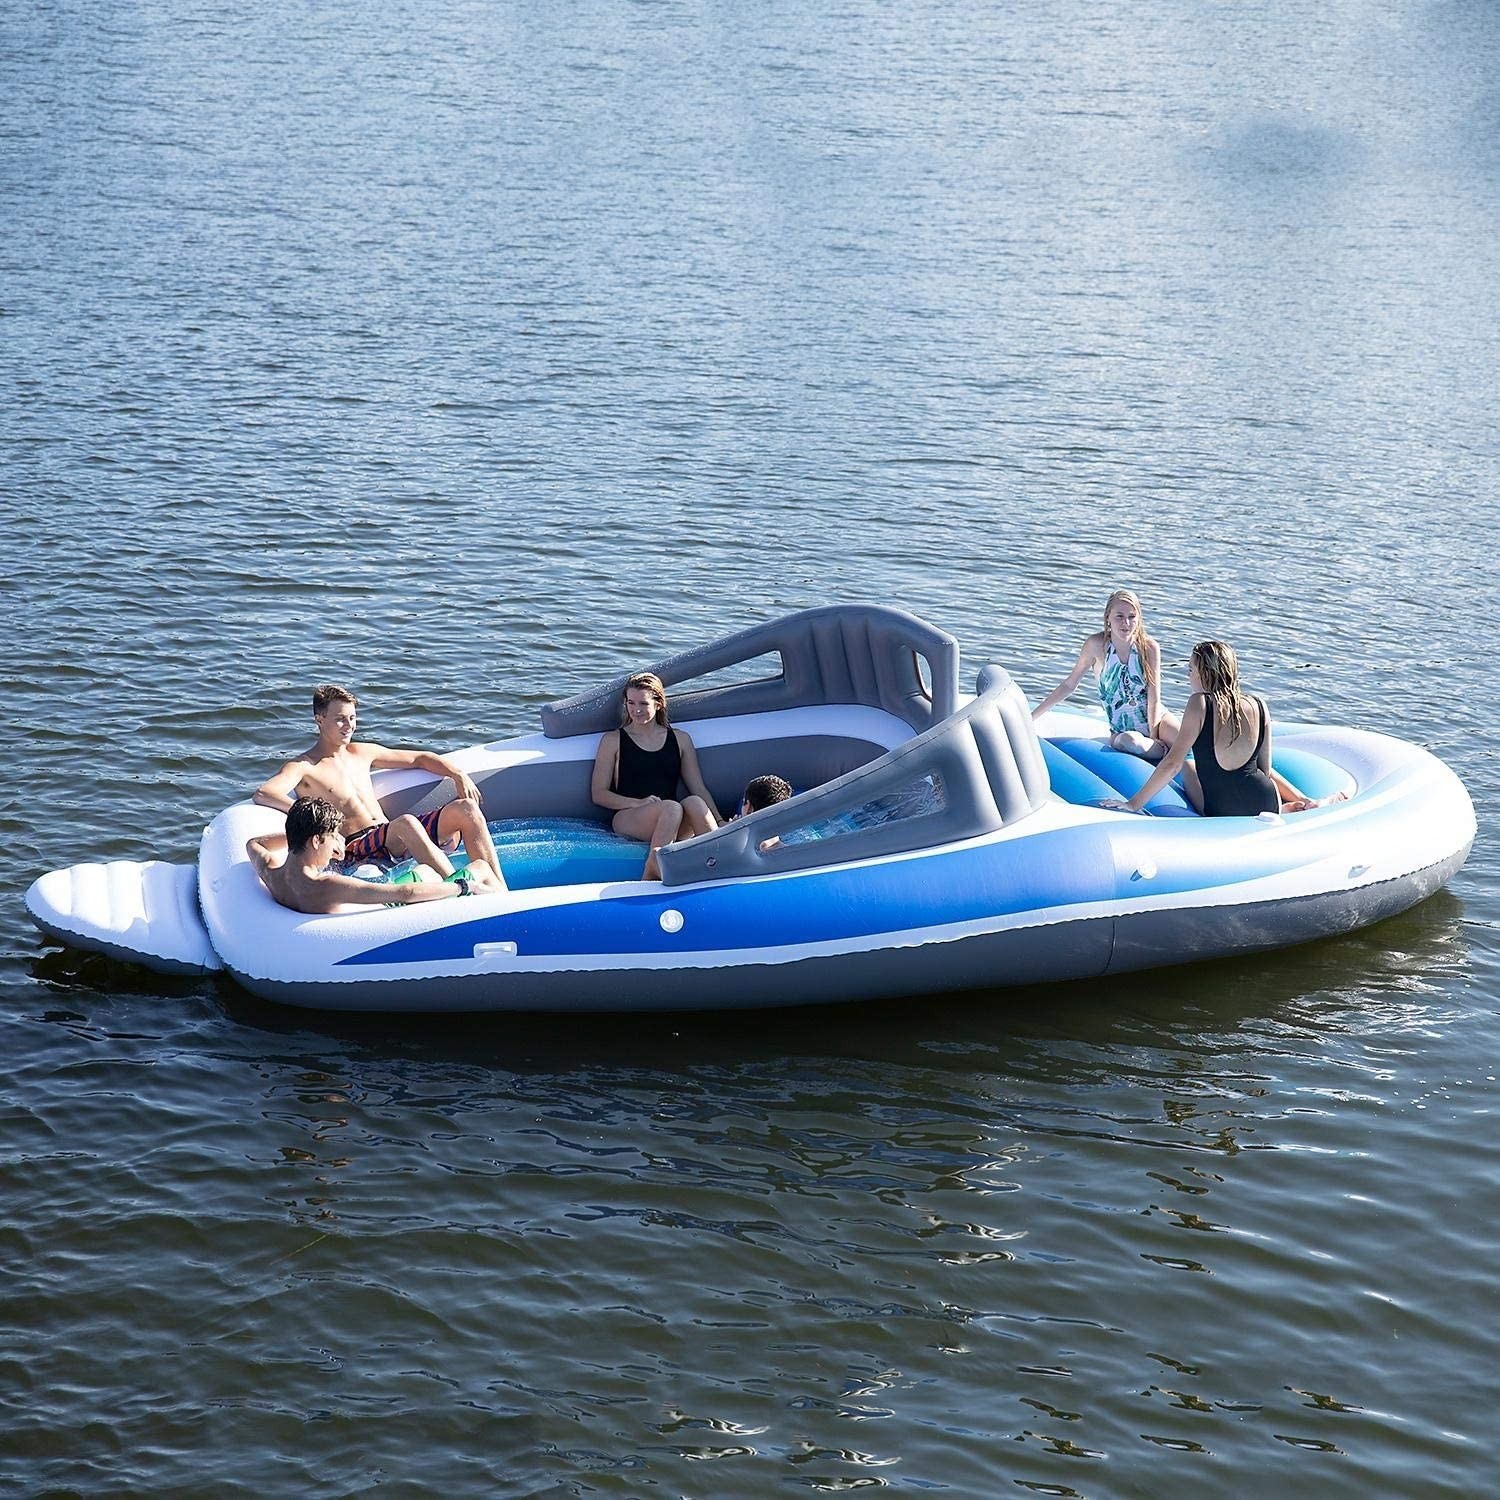 O design permite até 6 pessoas por vez no barco (Foto: Reprodução / Amazon)